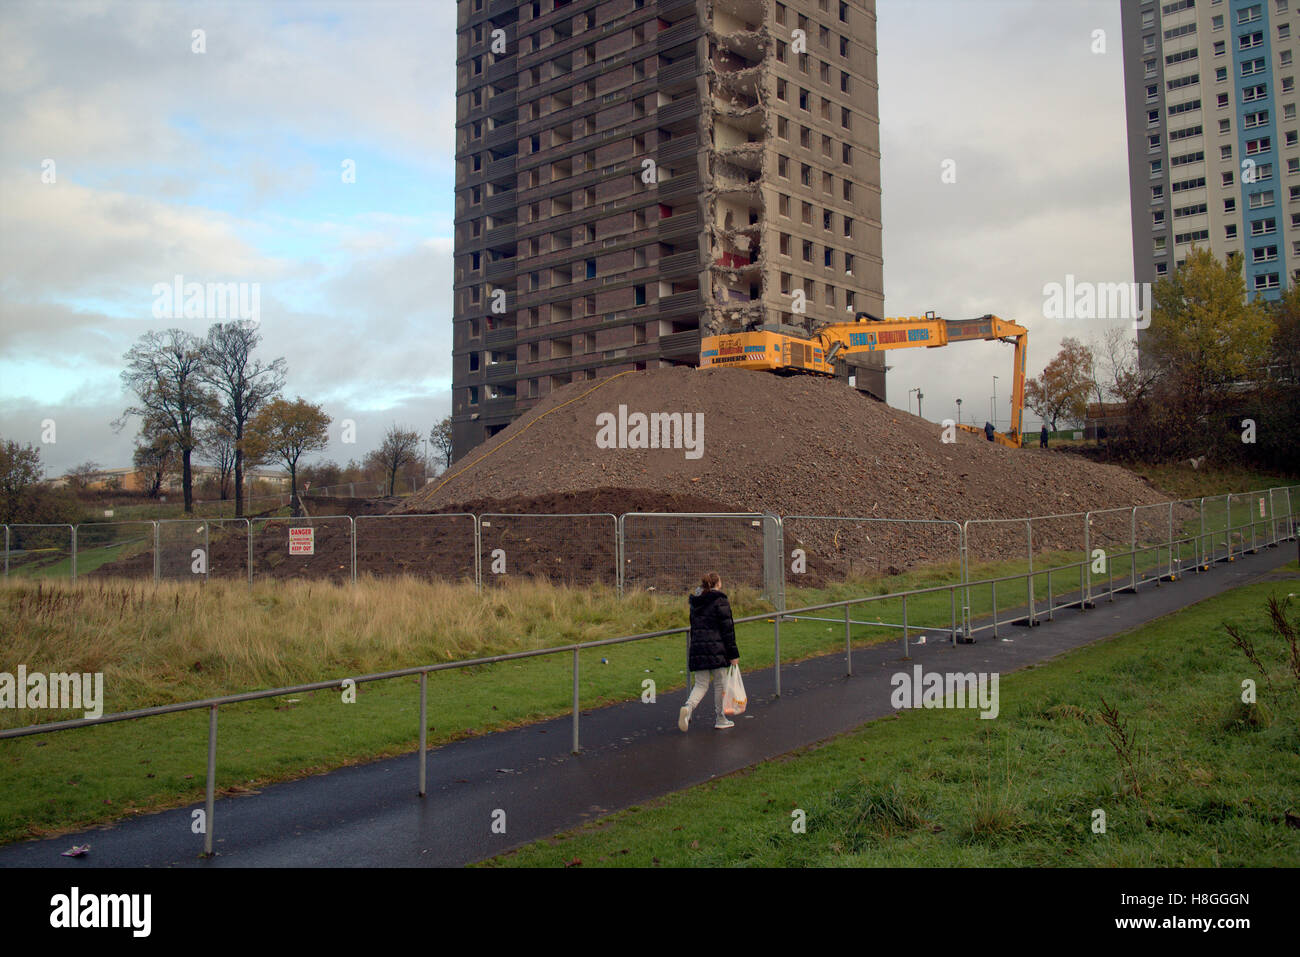 Demolición de Glasgow bloques de pisos torre alta o rascacielos Foto de stock